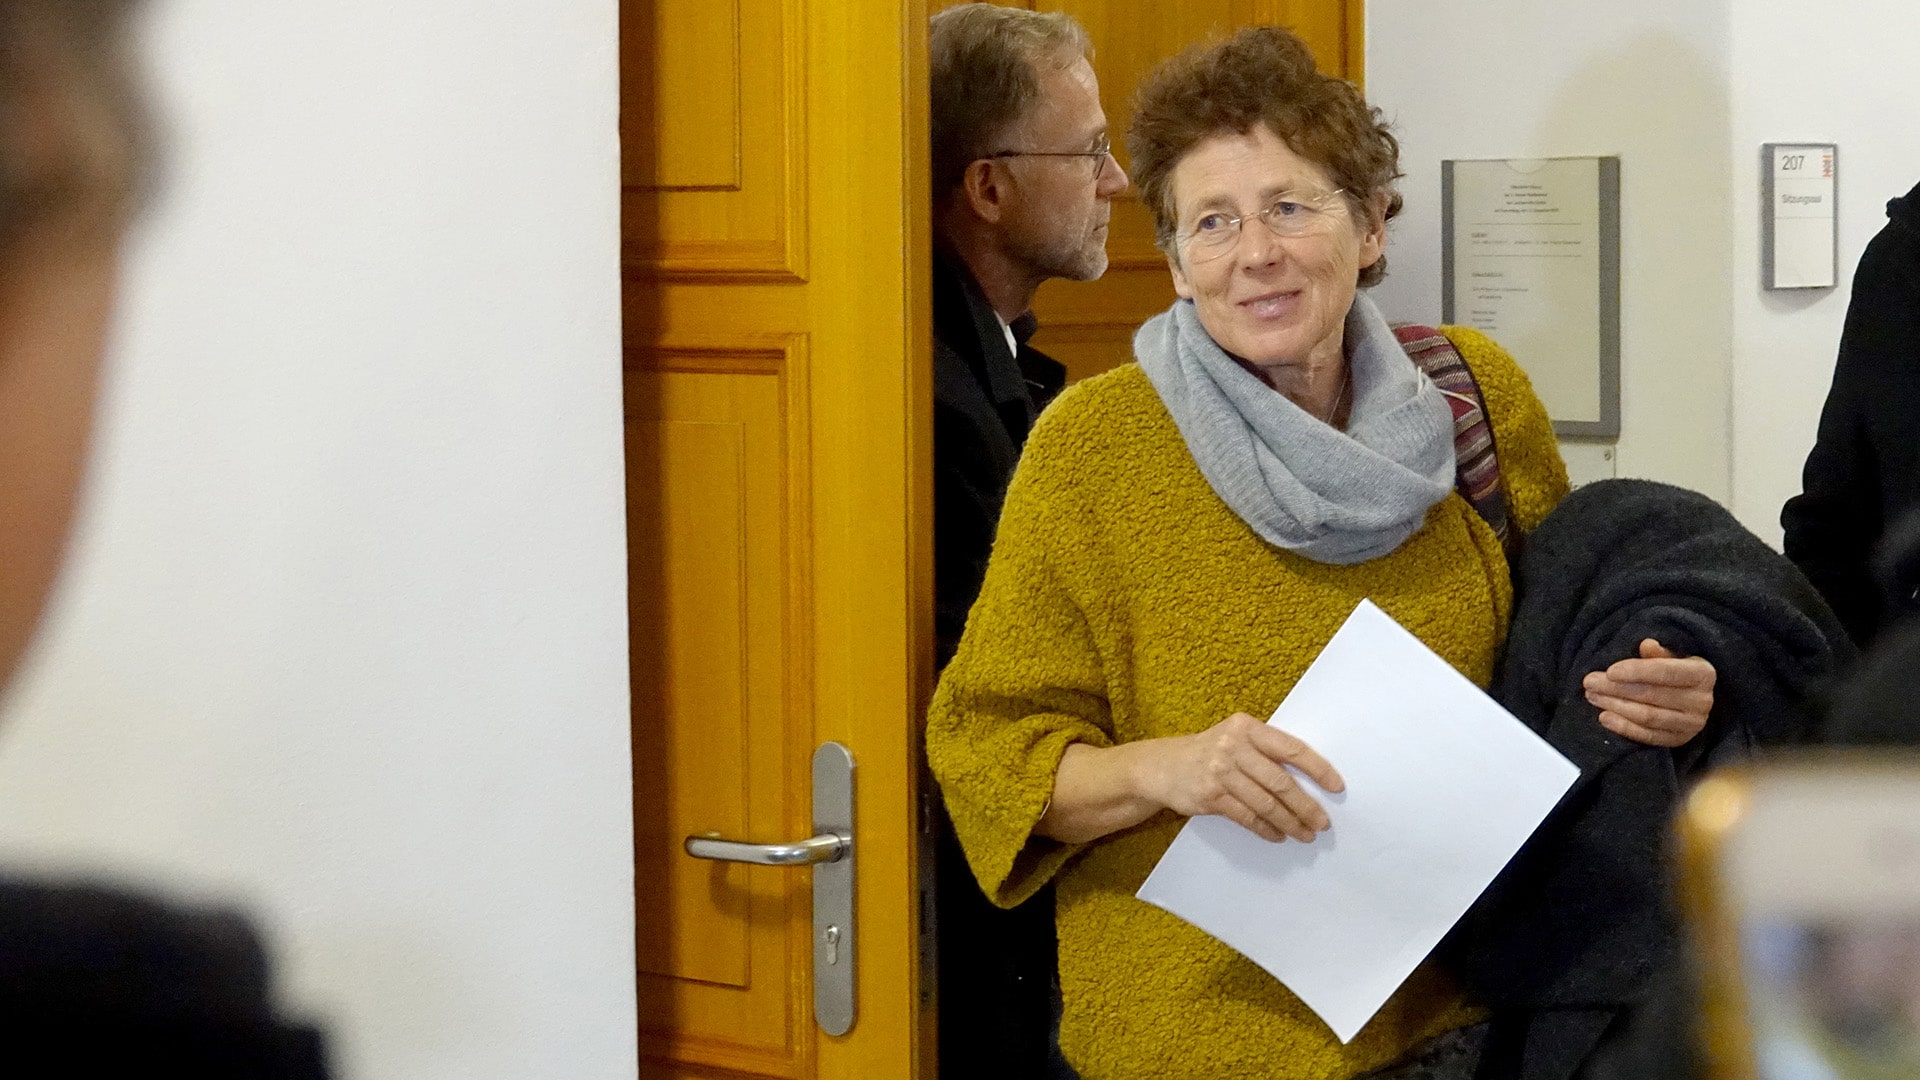 Kristina Hänel nach ihrer erneuten Verurteilung im Dezember 2019